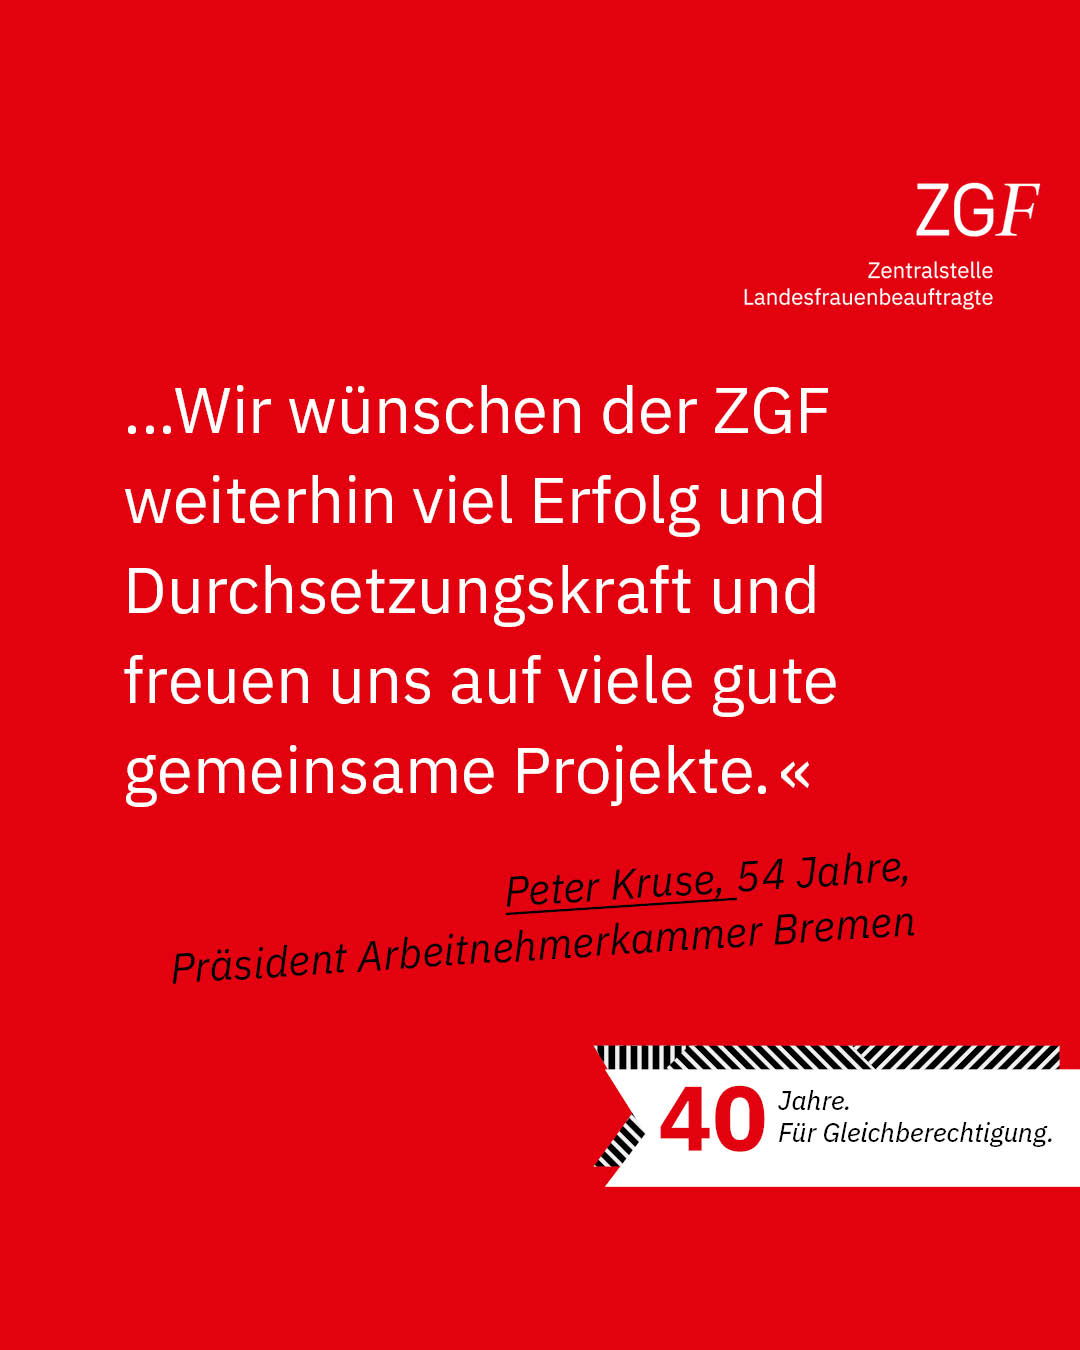 Statement 40 Jahre Gleichberechtigung, Peter Kruse, Präsident Arbeitnehmerkammer Bremen